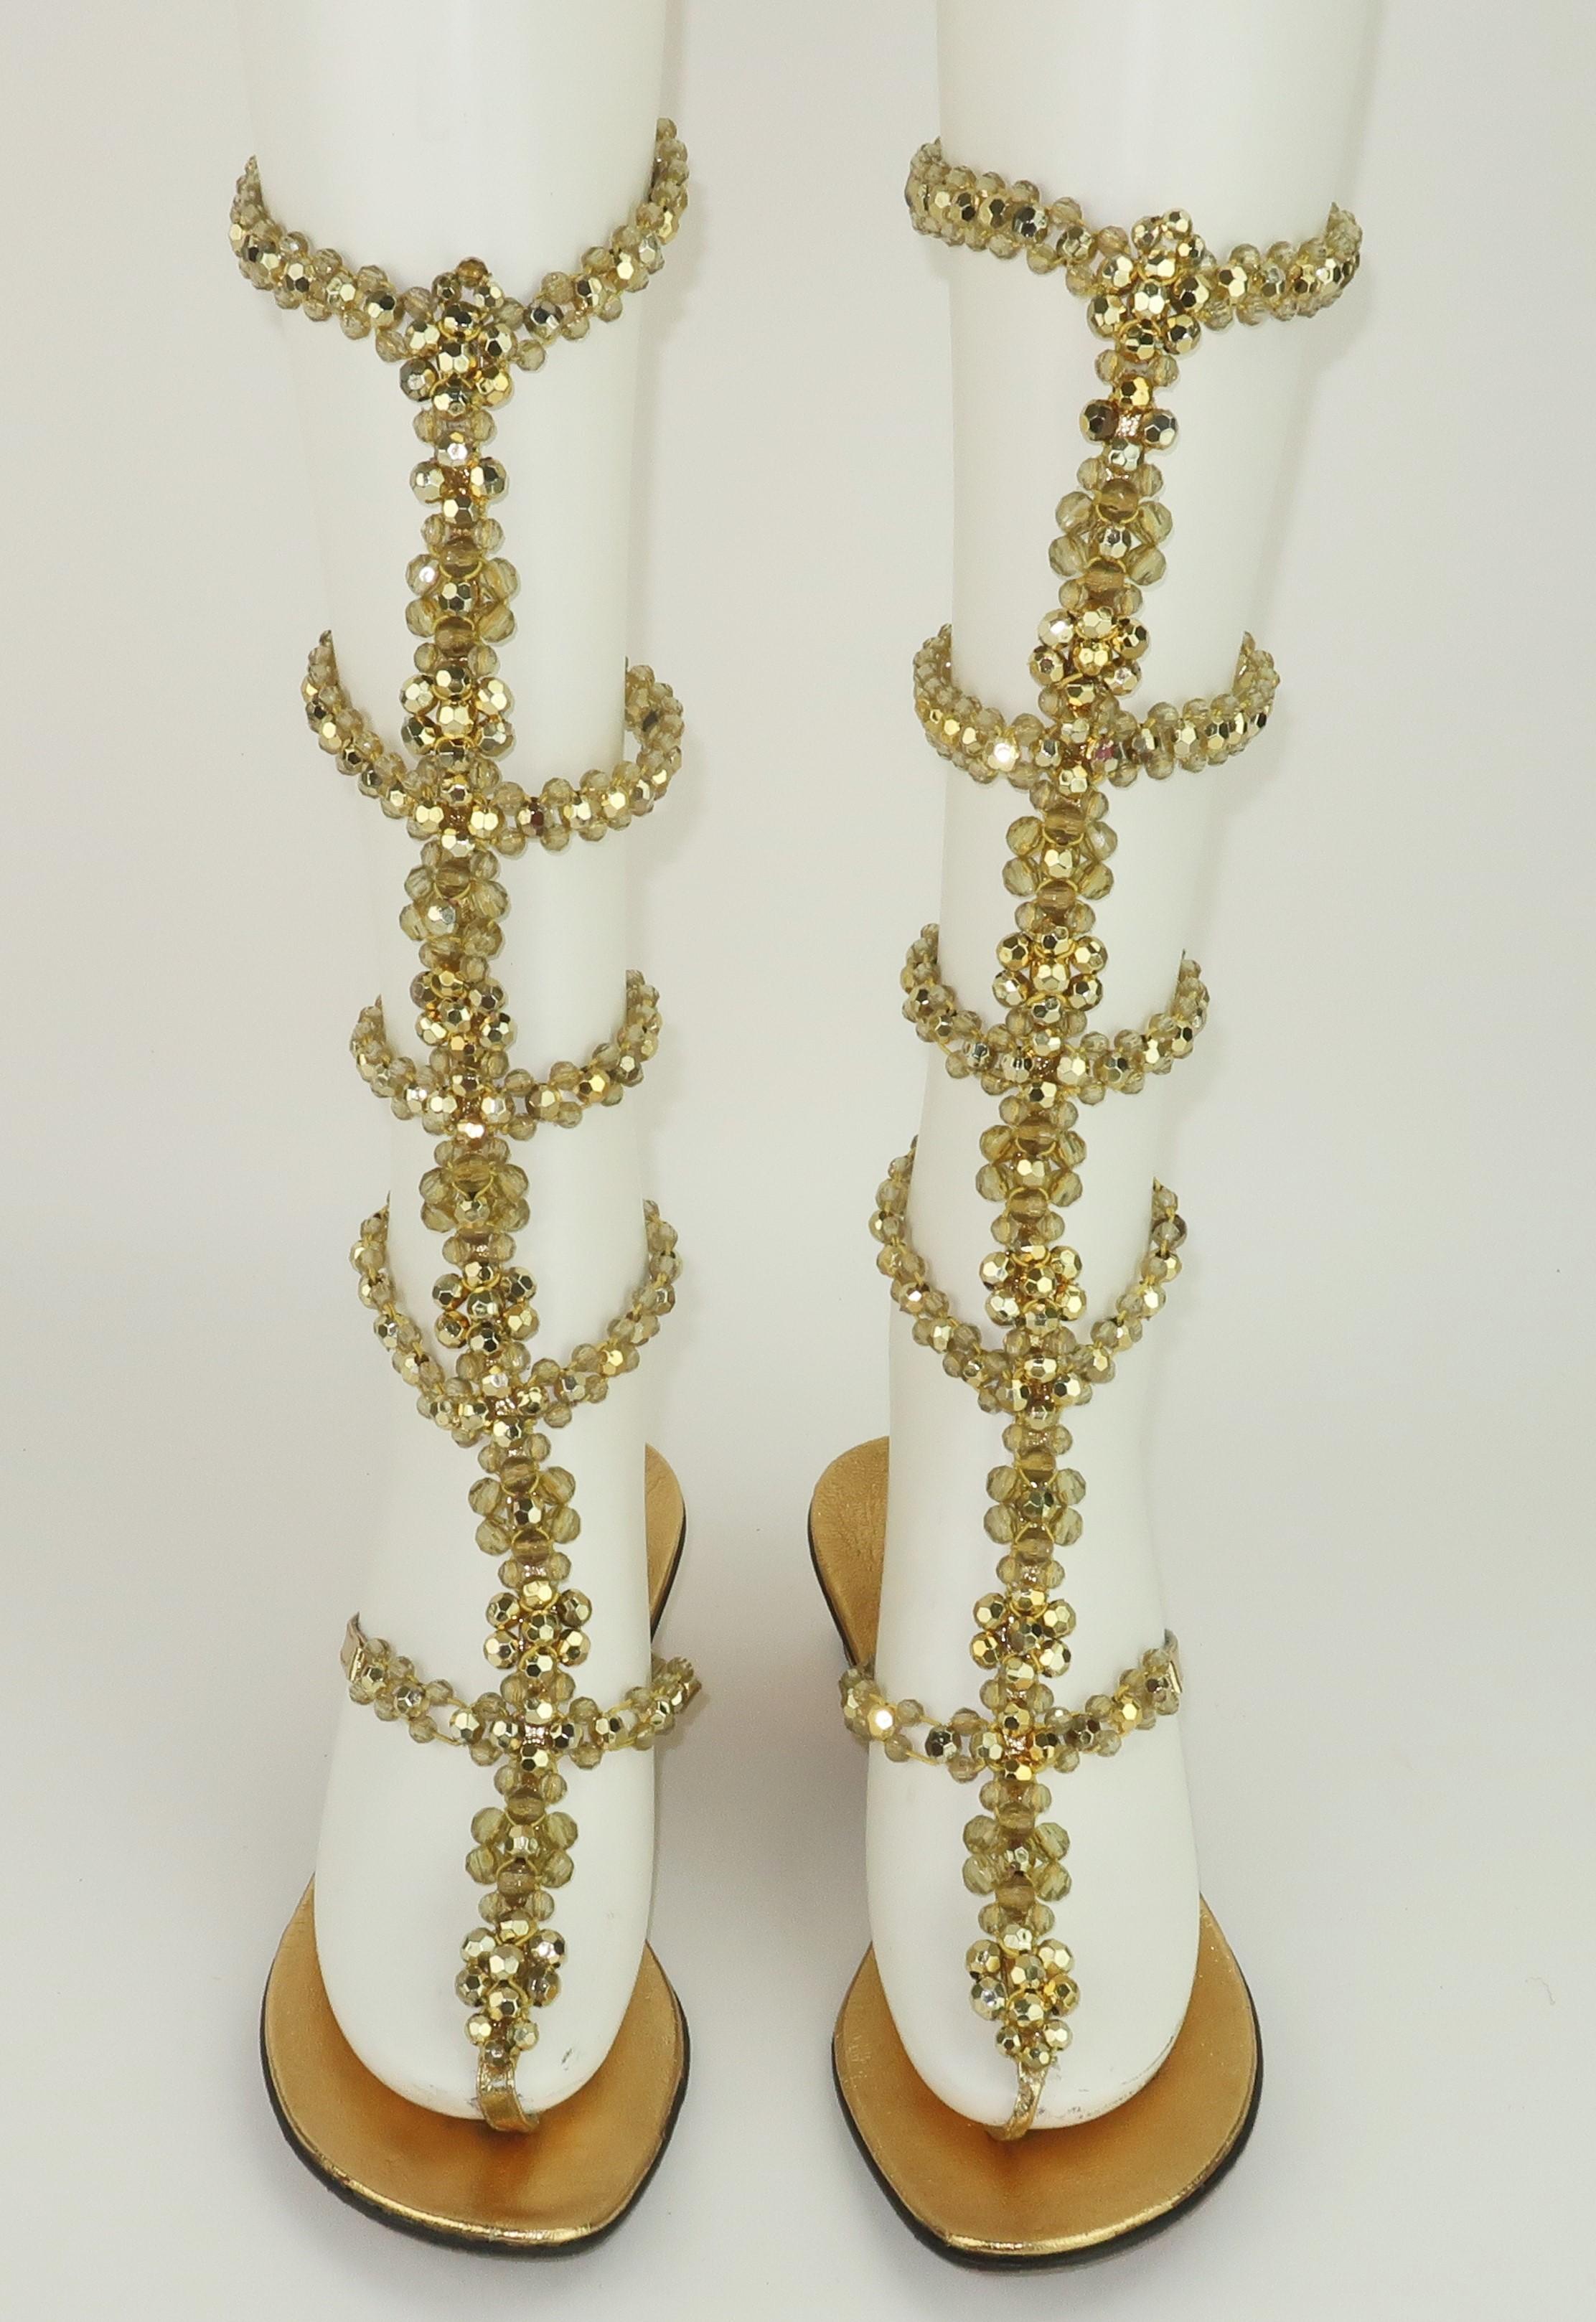 Goldener Glamour im Gladiatorenstil! Italienische DeMura-Sandalen aus den 1960er Jahren mit Ledersohle und einem Obermaterial aus goldenem Vinyl und elastischen, facettierten Goldperlen.  Die Sandalen haben eine Zehenstegkonstruktion und 5 Reihen